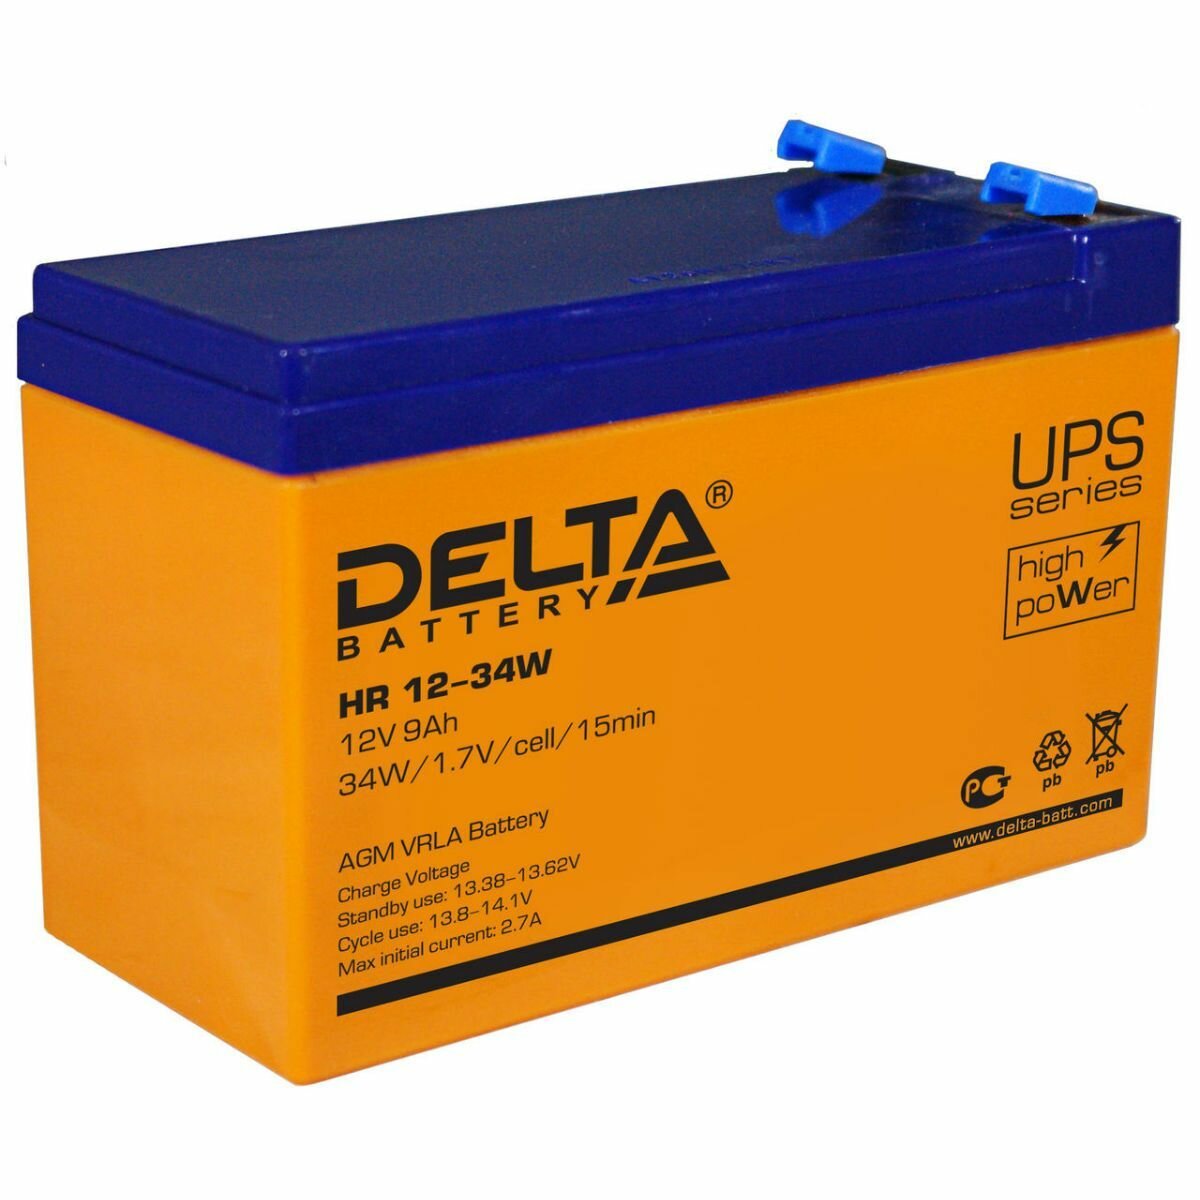 DELTA Аккумулятор Delta HR 12-34 W 12В 9Ач 151x65x100 Прямая (+-)